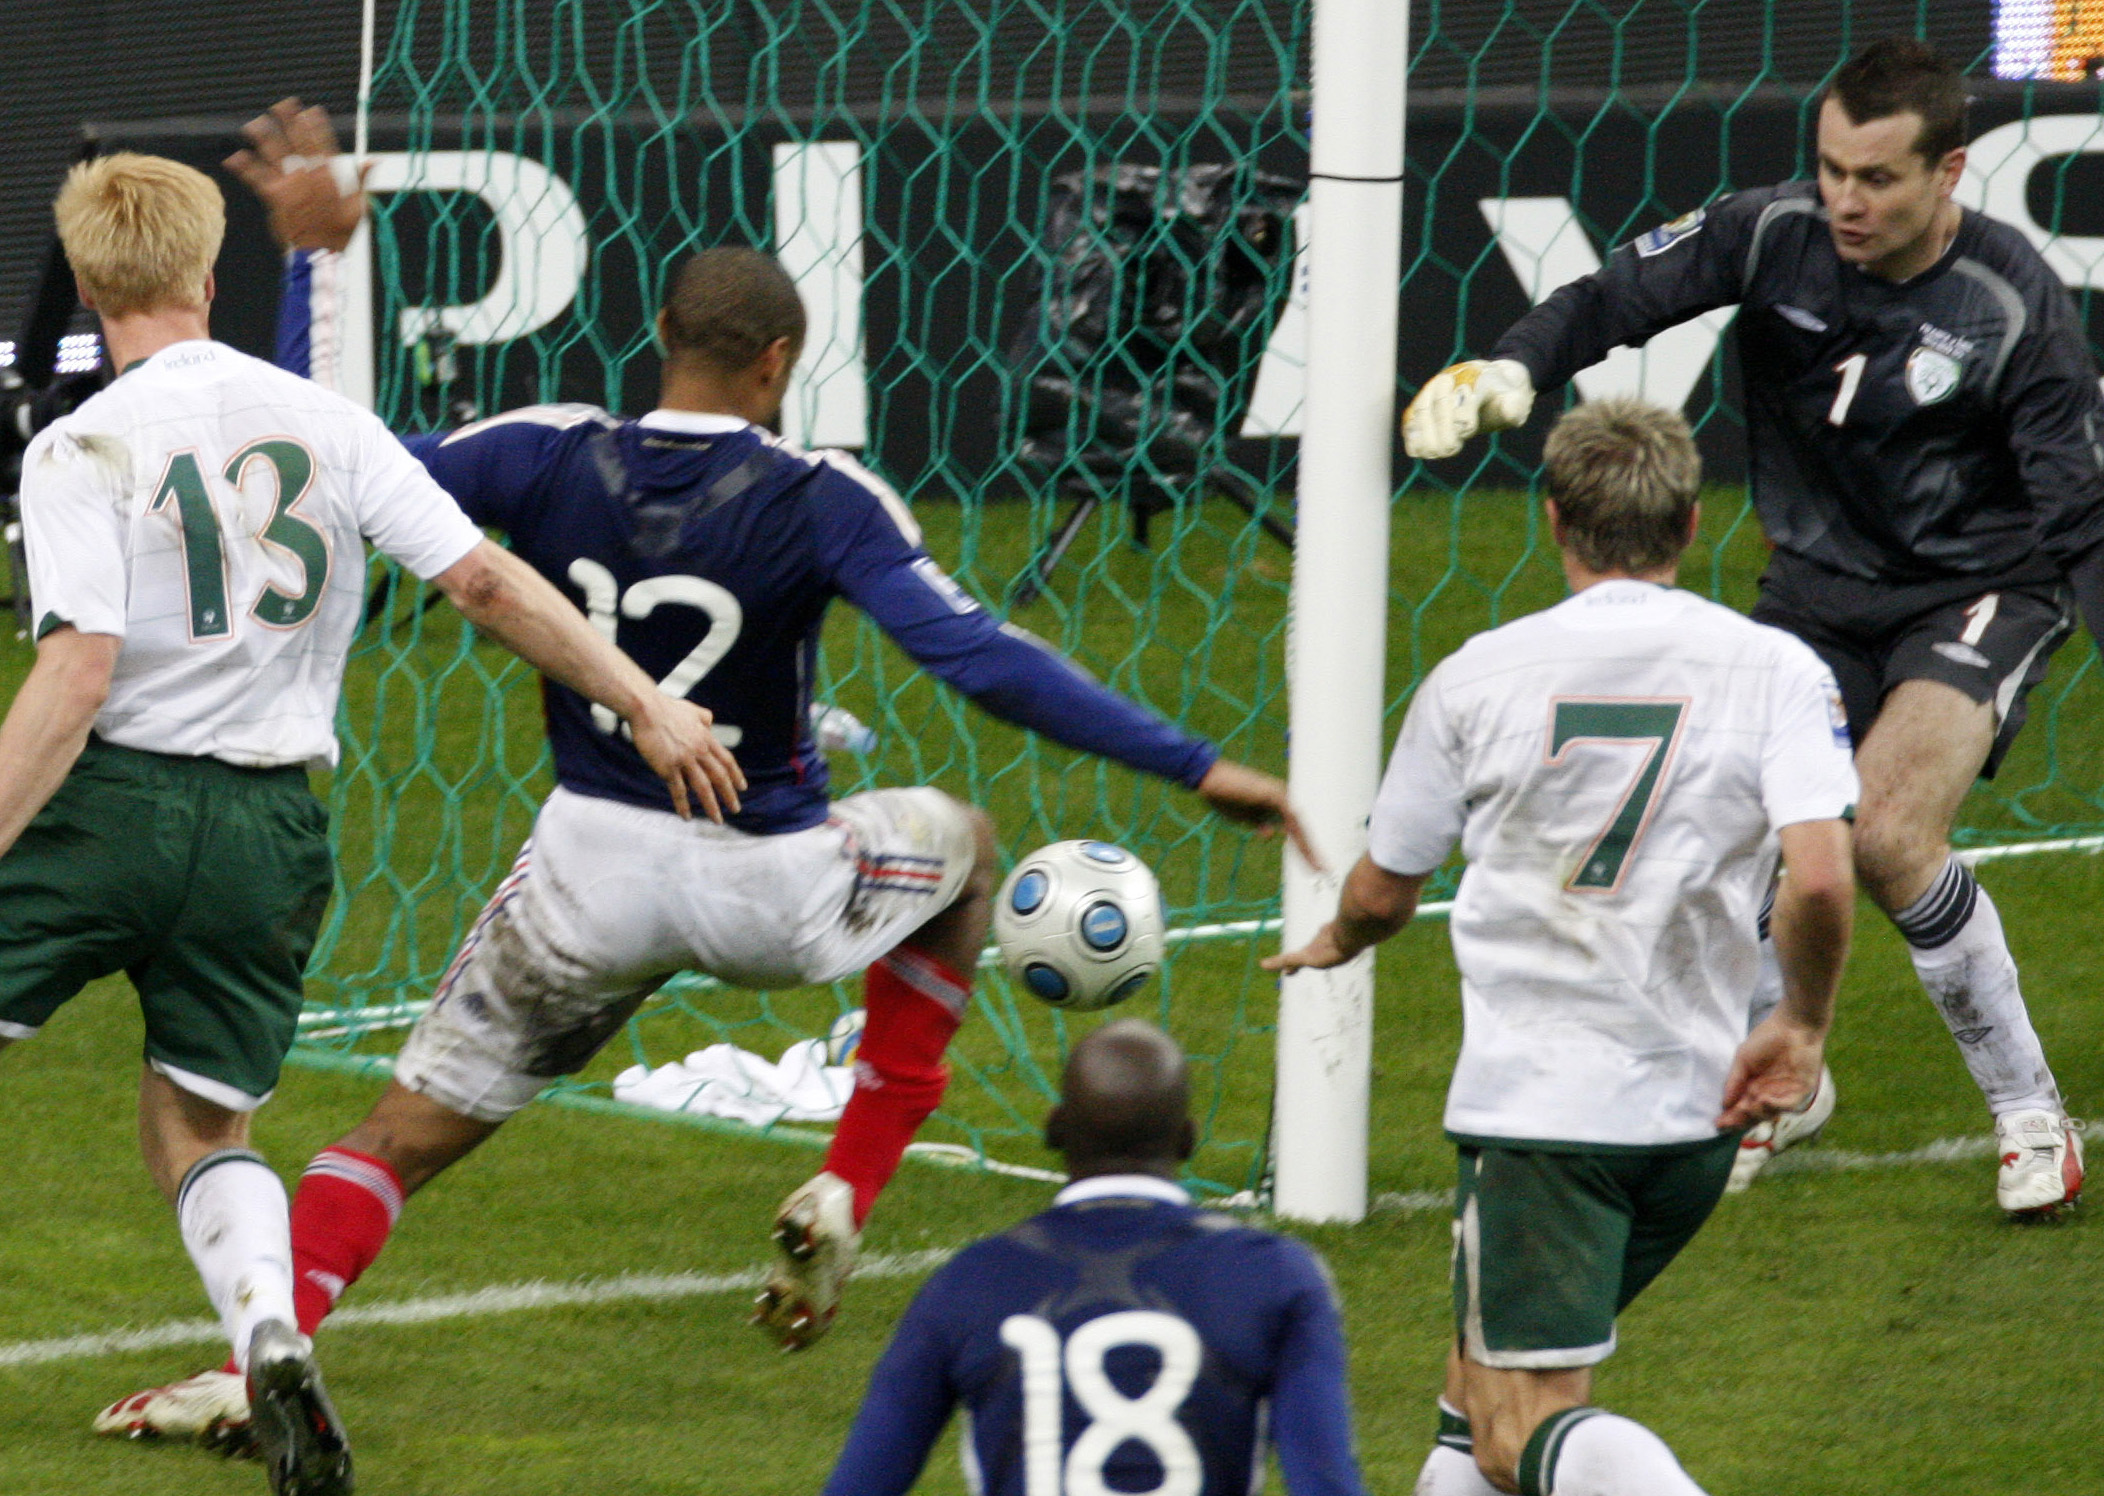 Thierry Henrys ökända handssituation som satte stopp för Martin Hanssons aktiva deltagande i VM-slutspelet i Sydafrika.